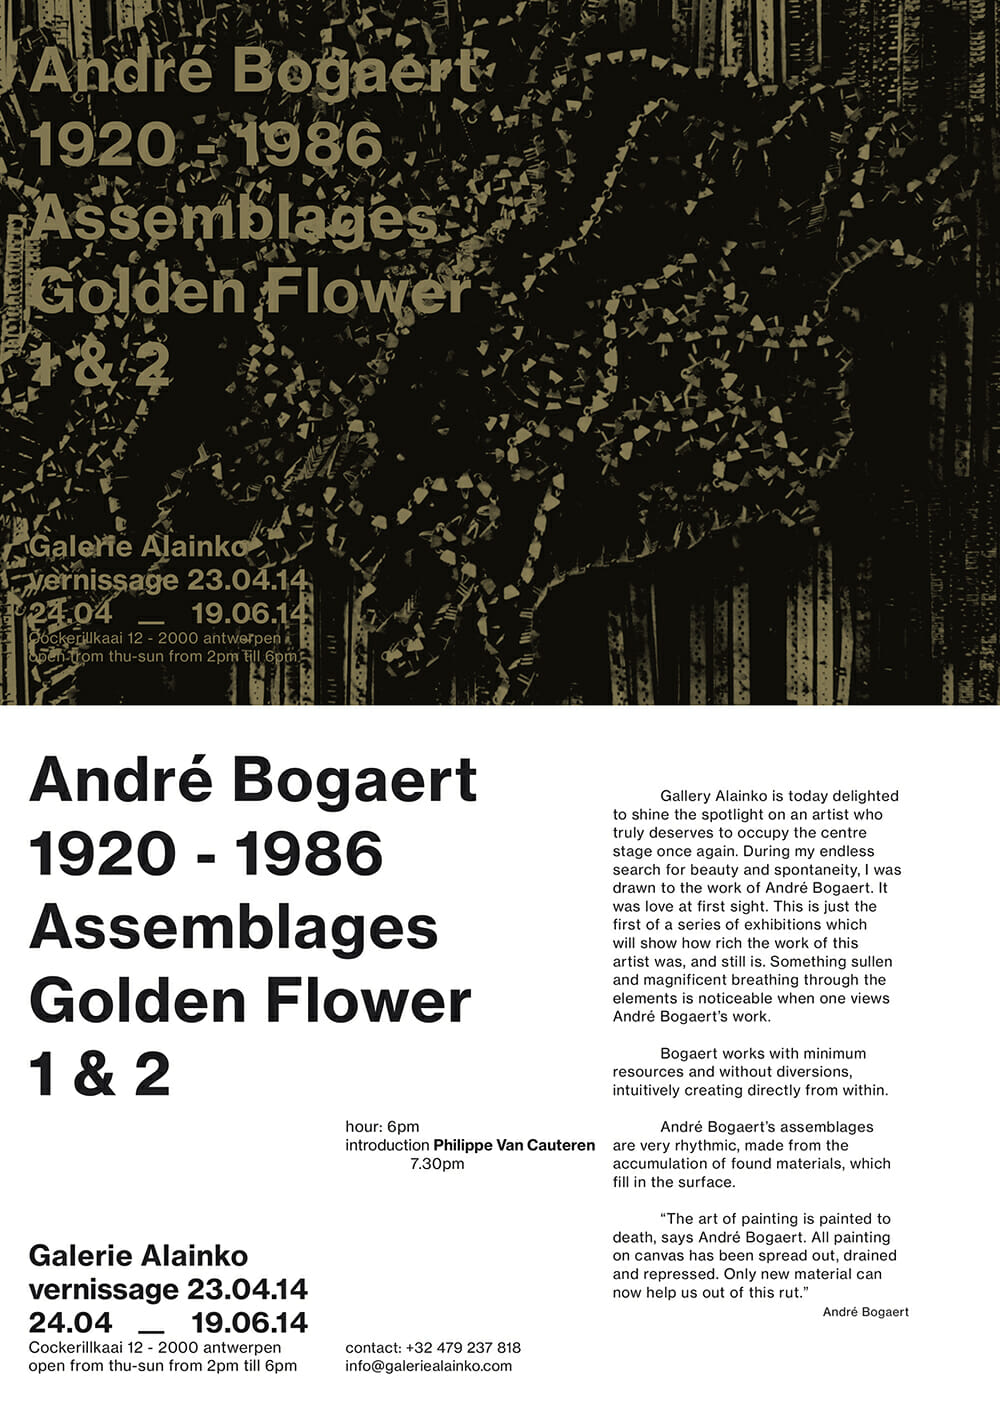 Belgian artist André Bogaert 1920 - 1986 Assemblages Golden Flower 1 & 2